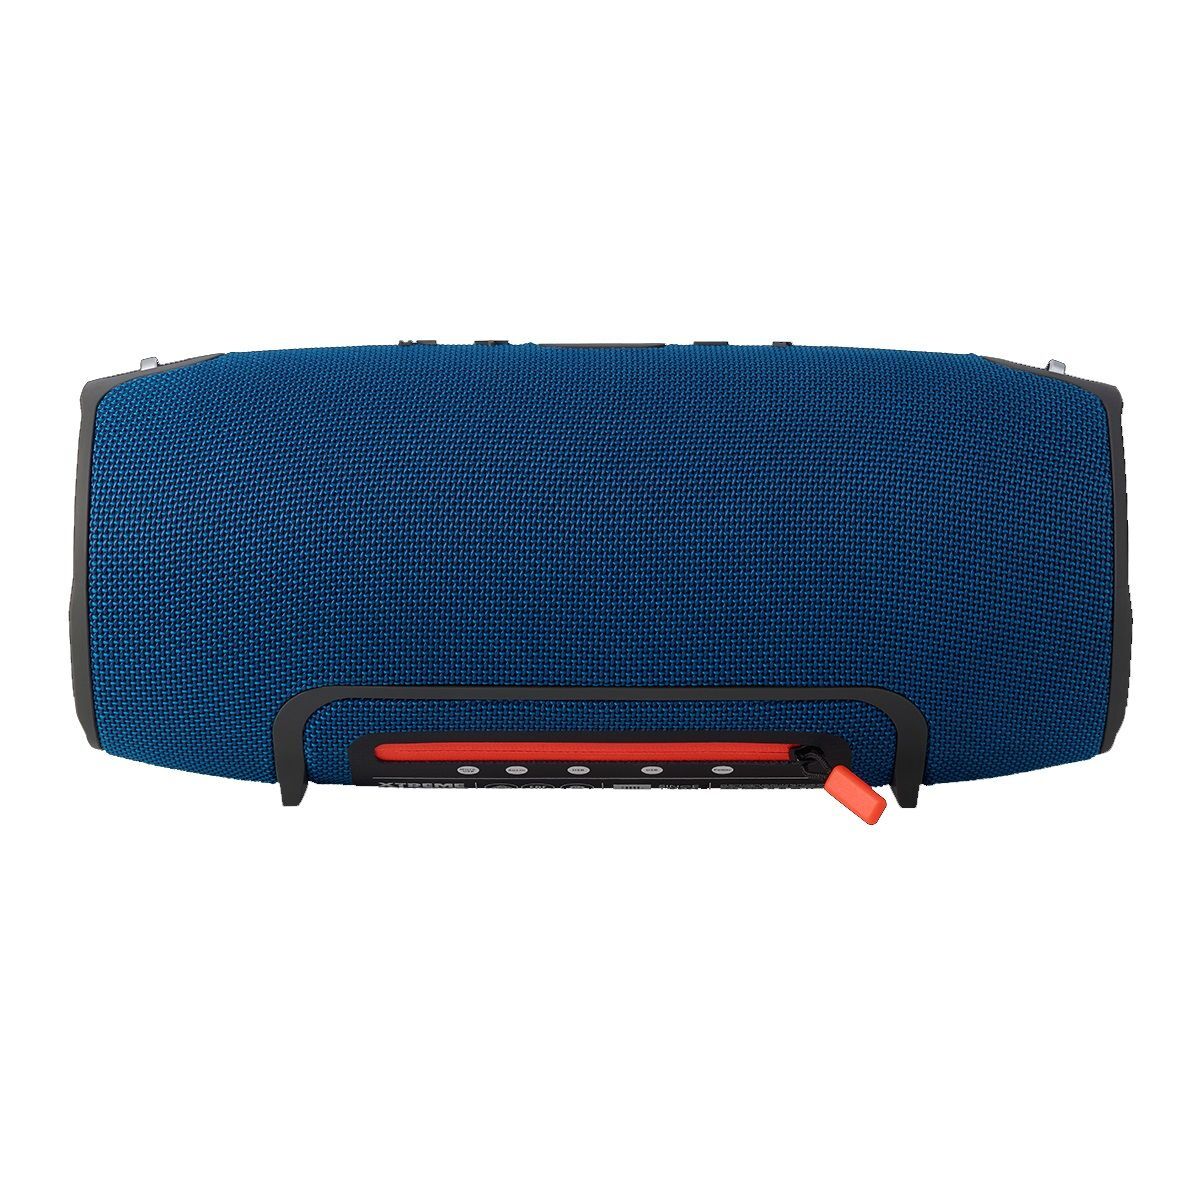 Boxa portabila Bluetooth jBL Extreme 2x20W Albastru